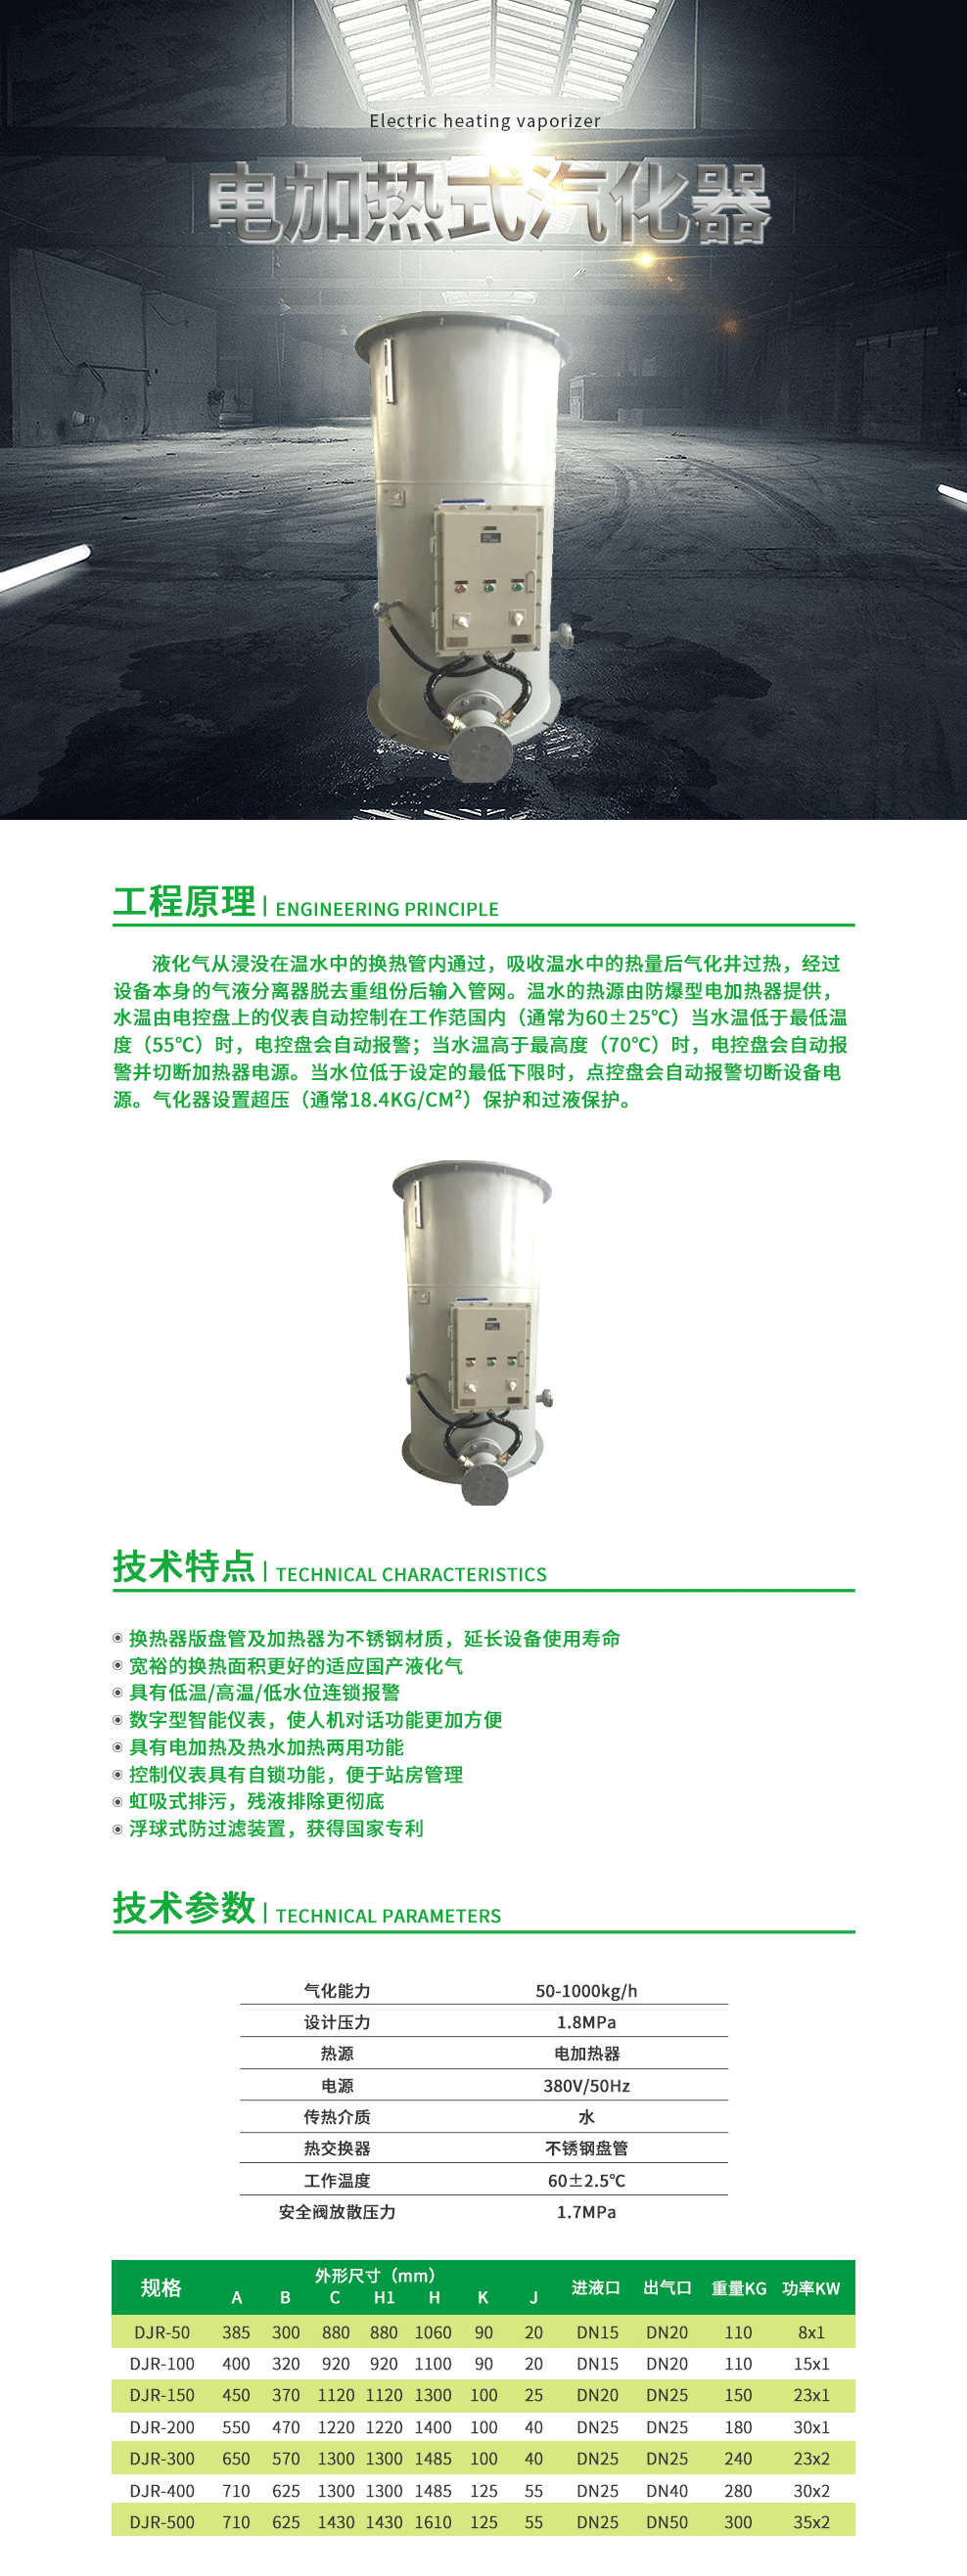 15-电加热式汽化器.png